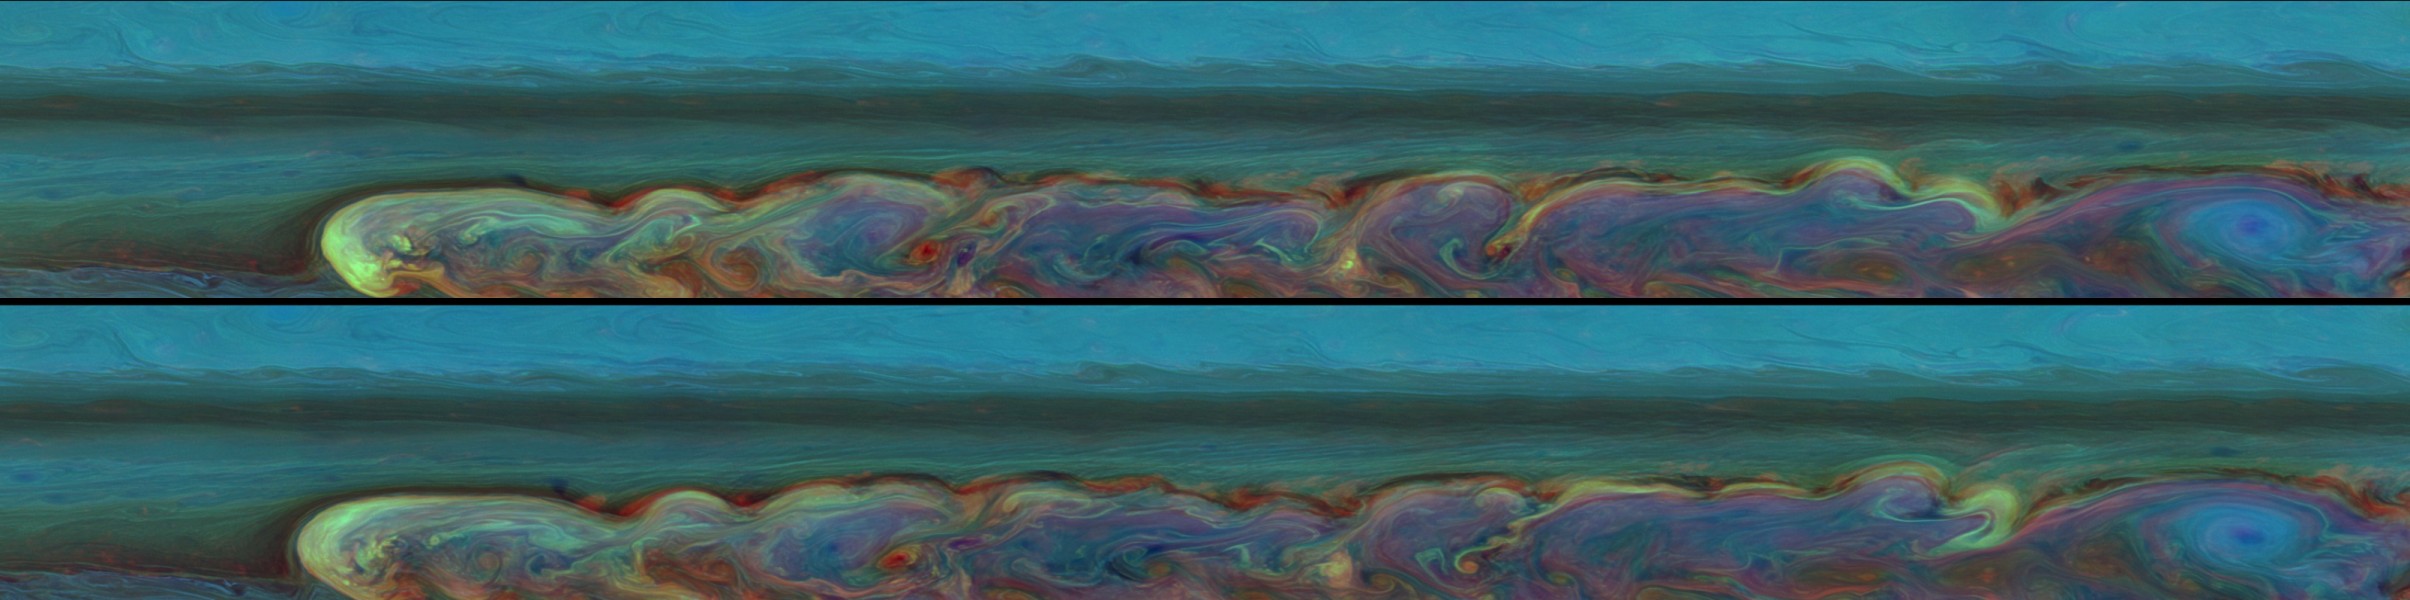 Panorámicas de la tormenta de Saturno